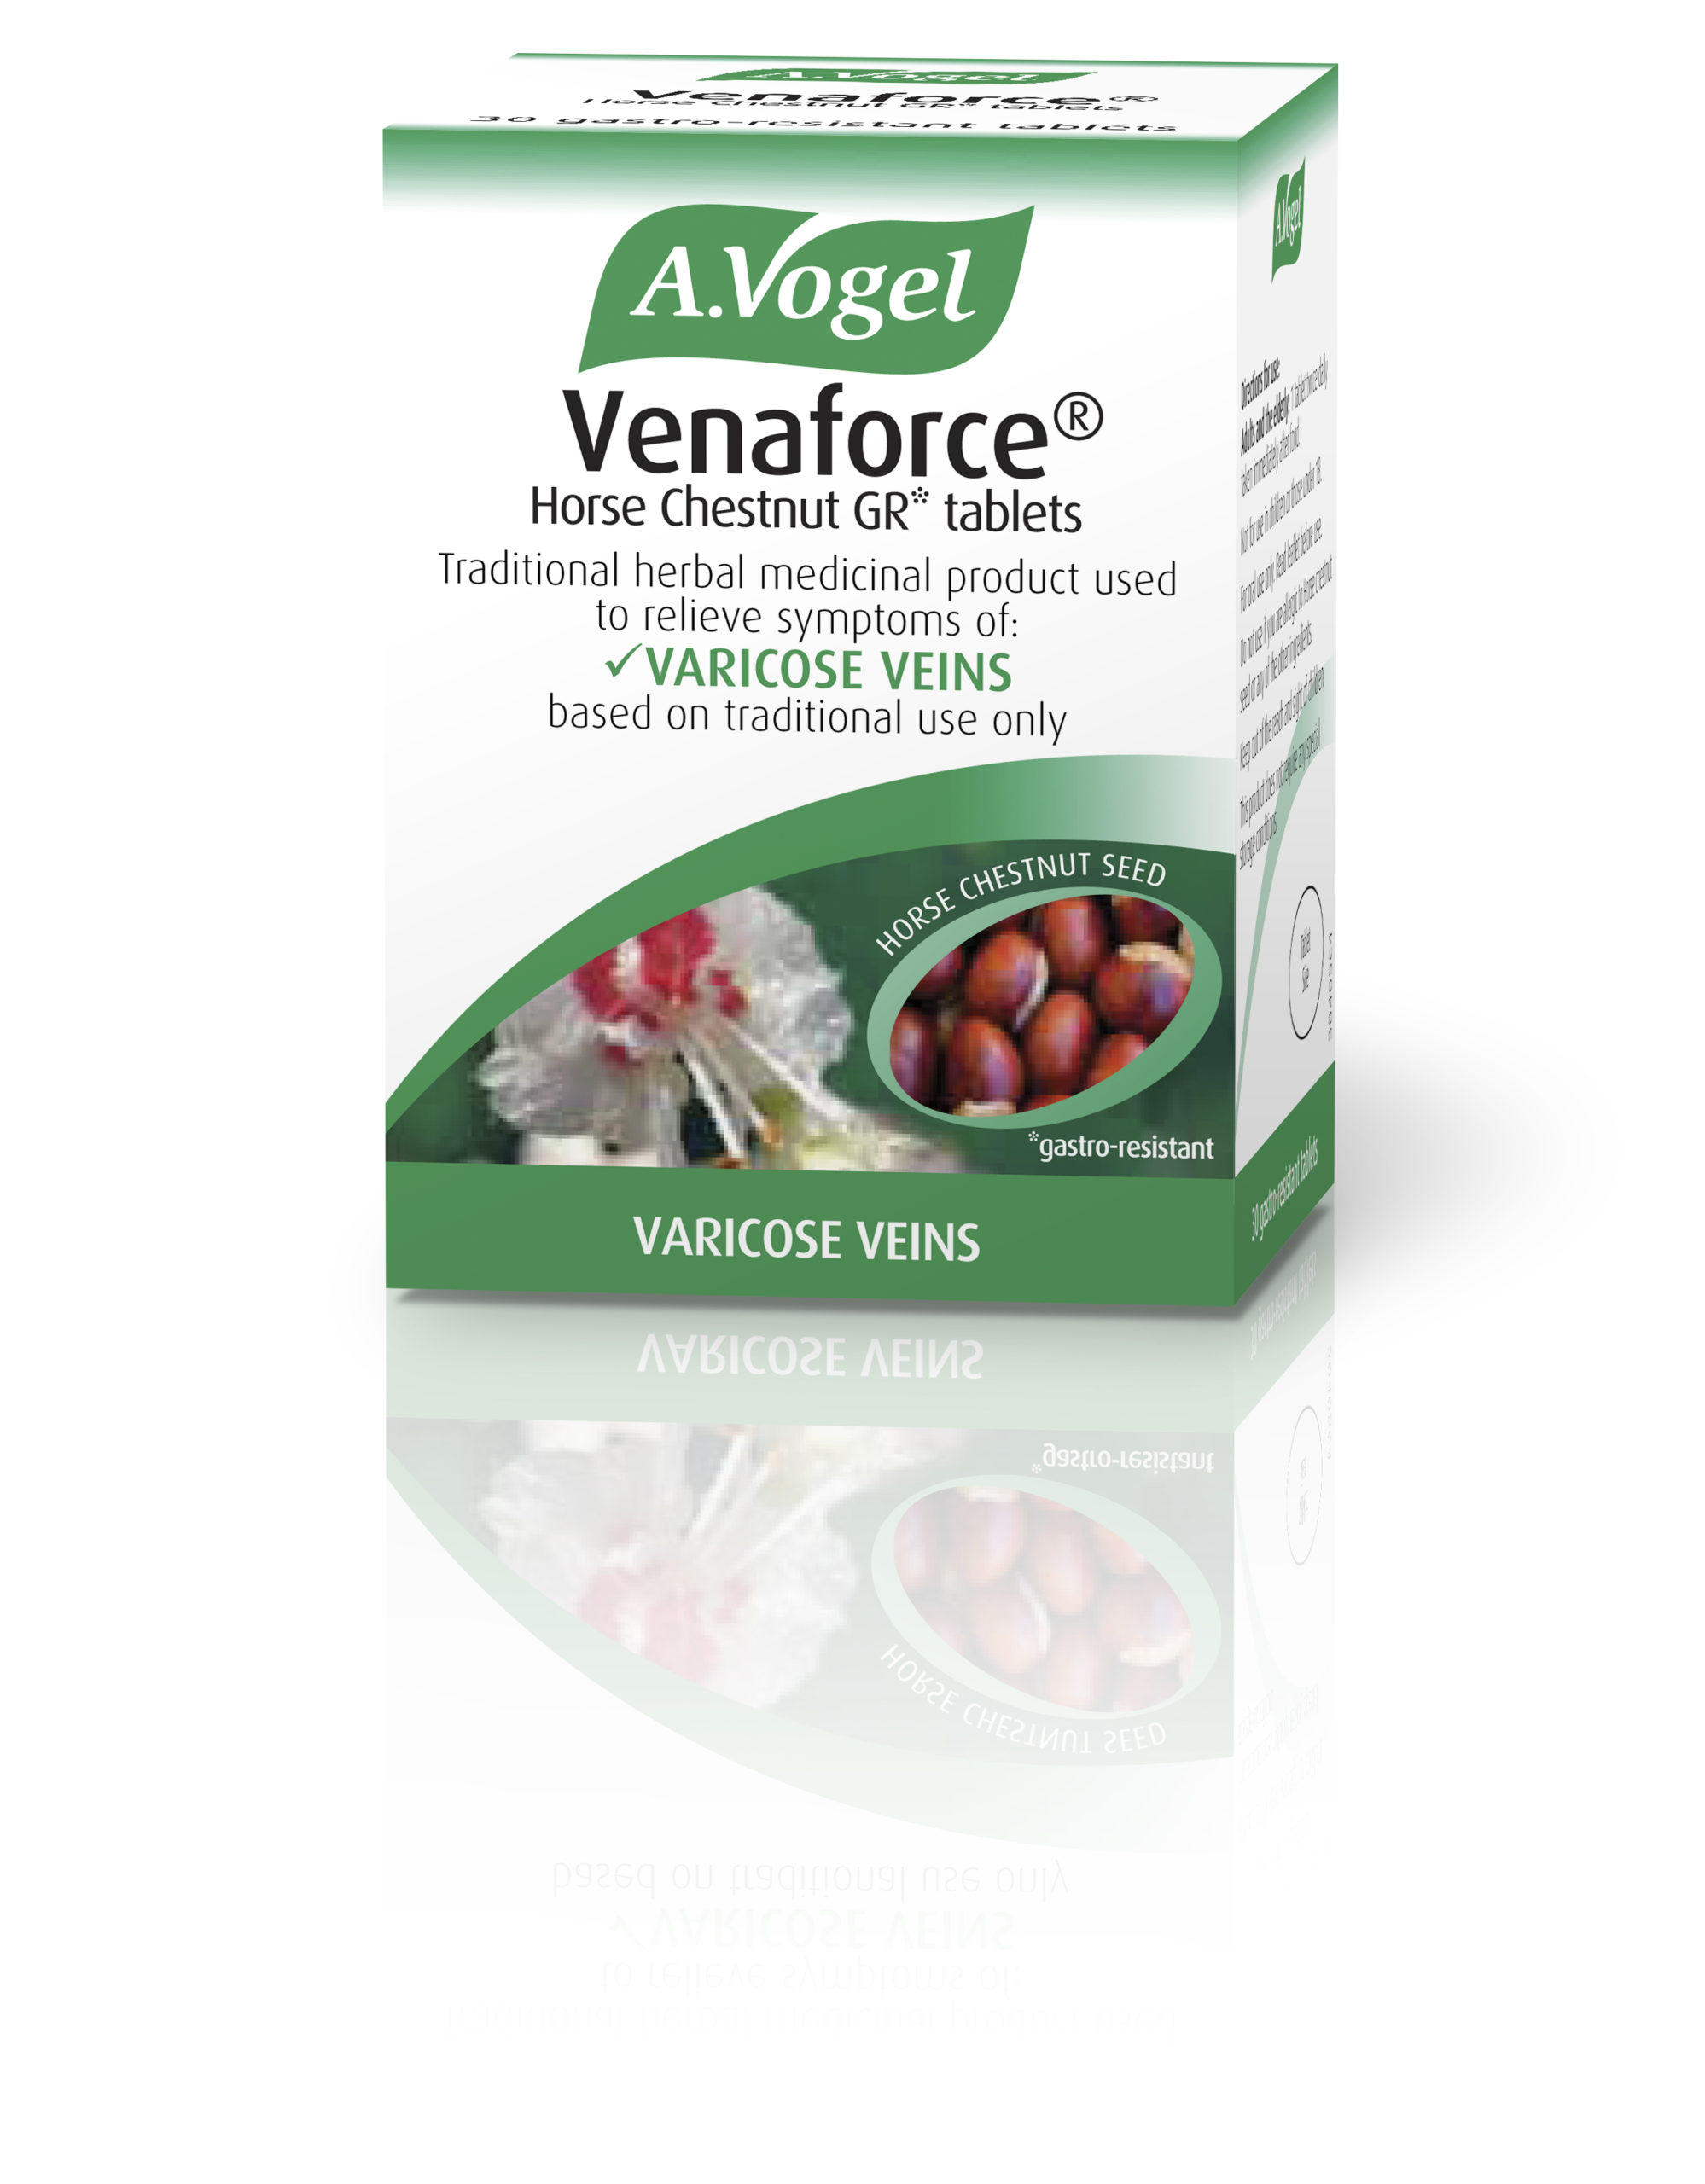 Venaforce Horse Chestnut GR* tablets